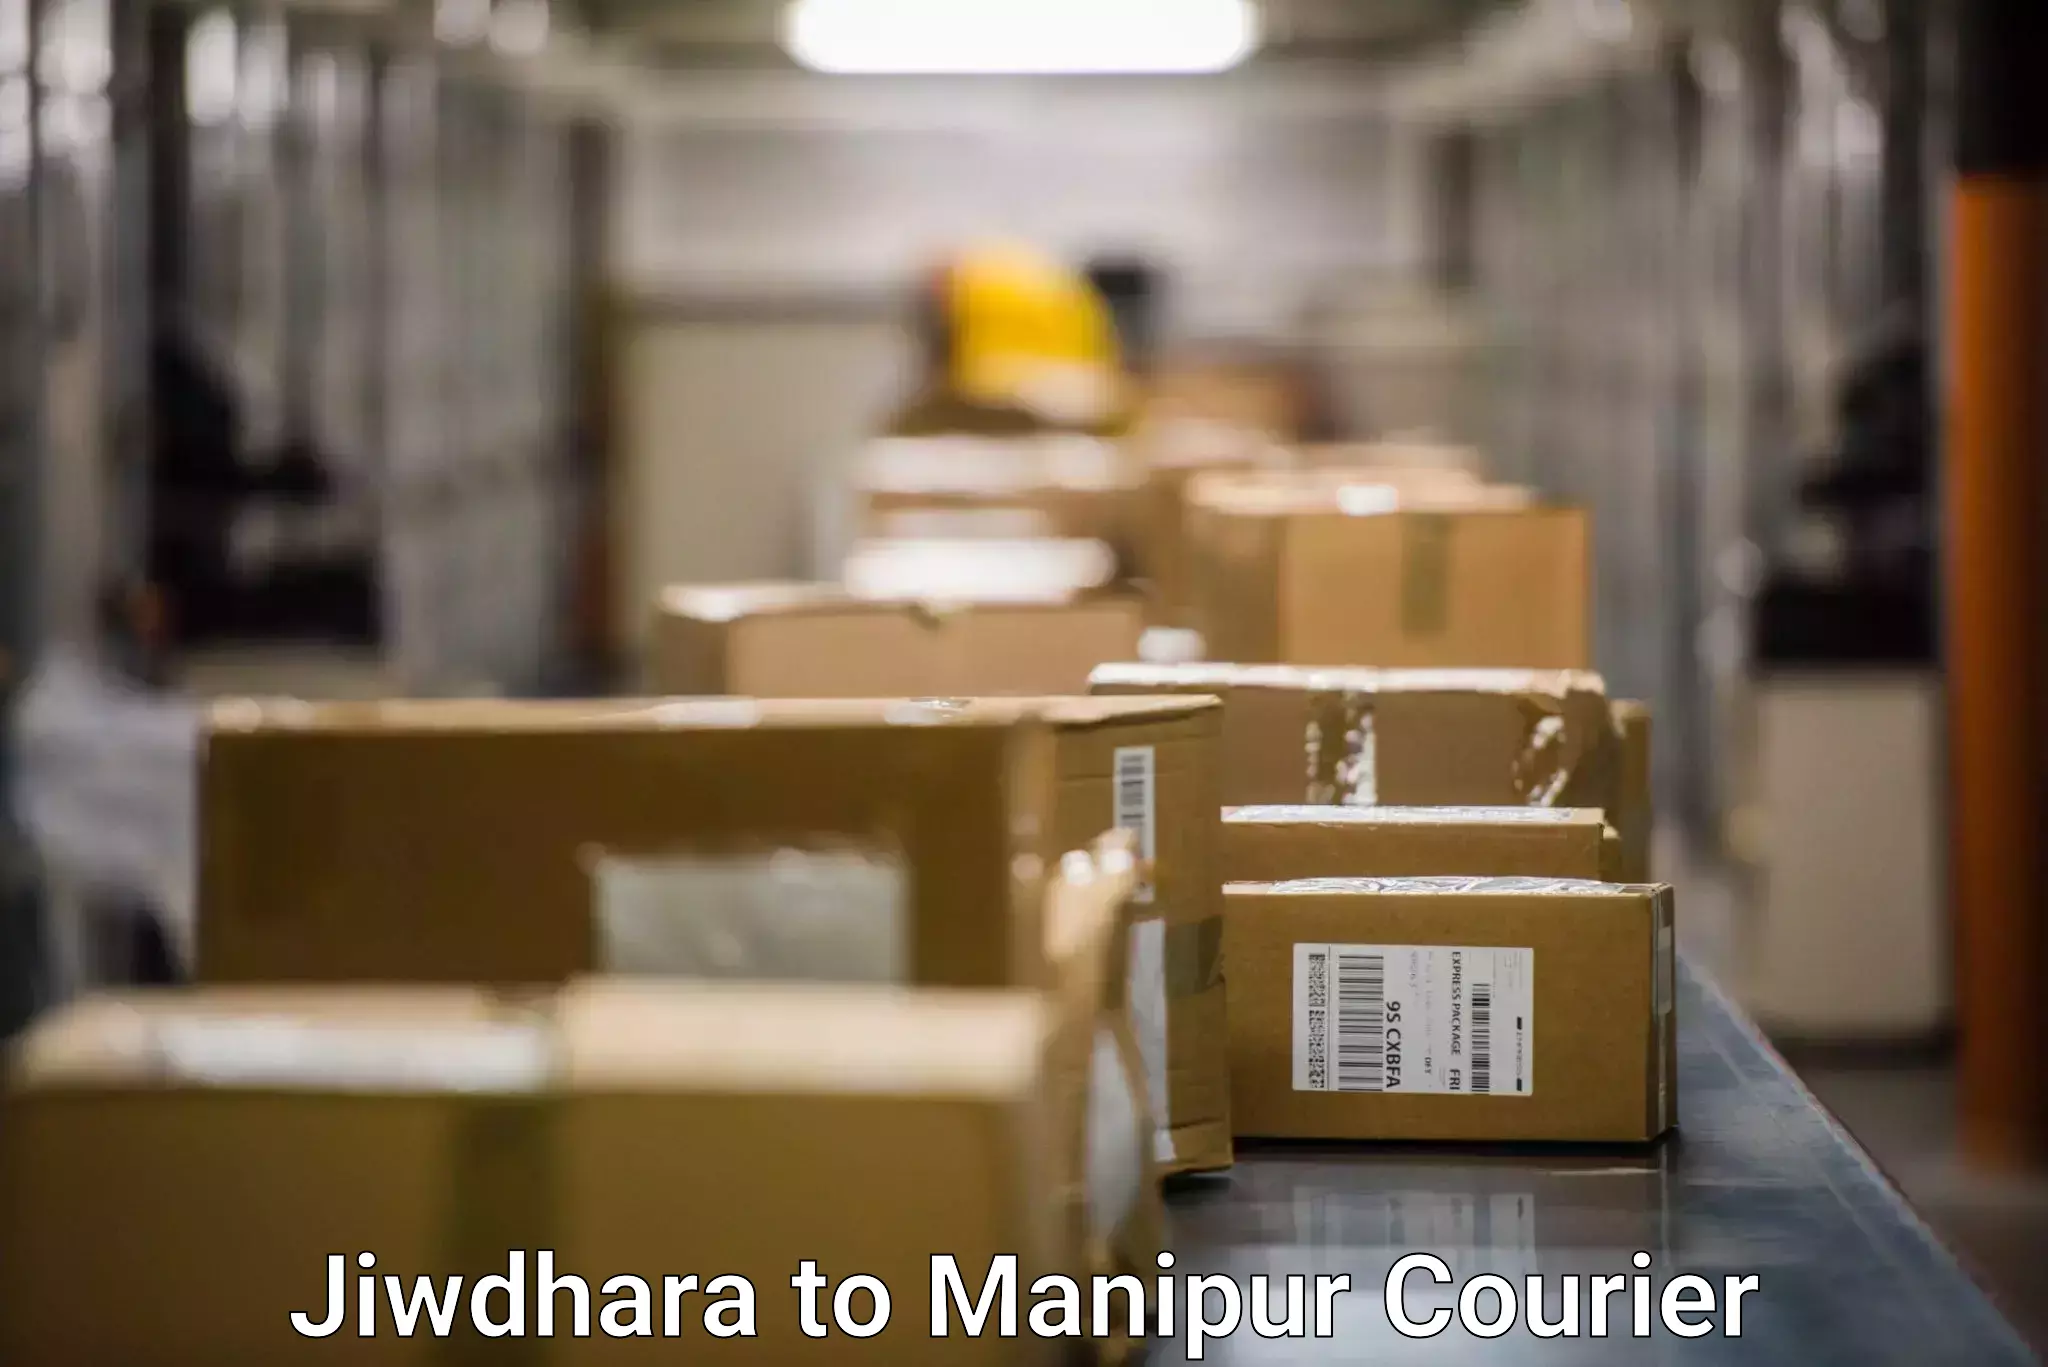 Multi-carrier shipping Jiwdhara to Manipur